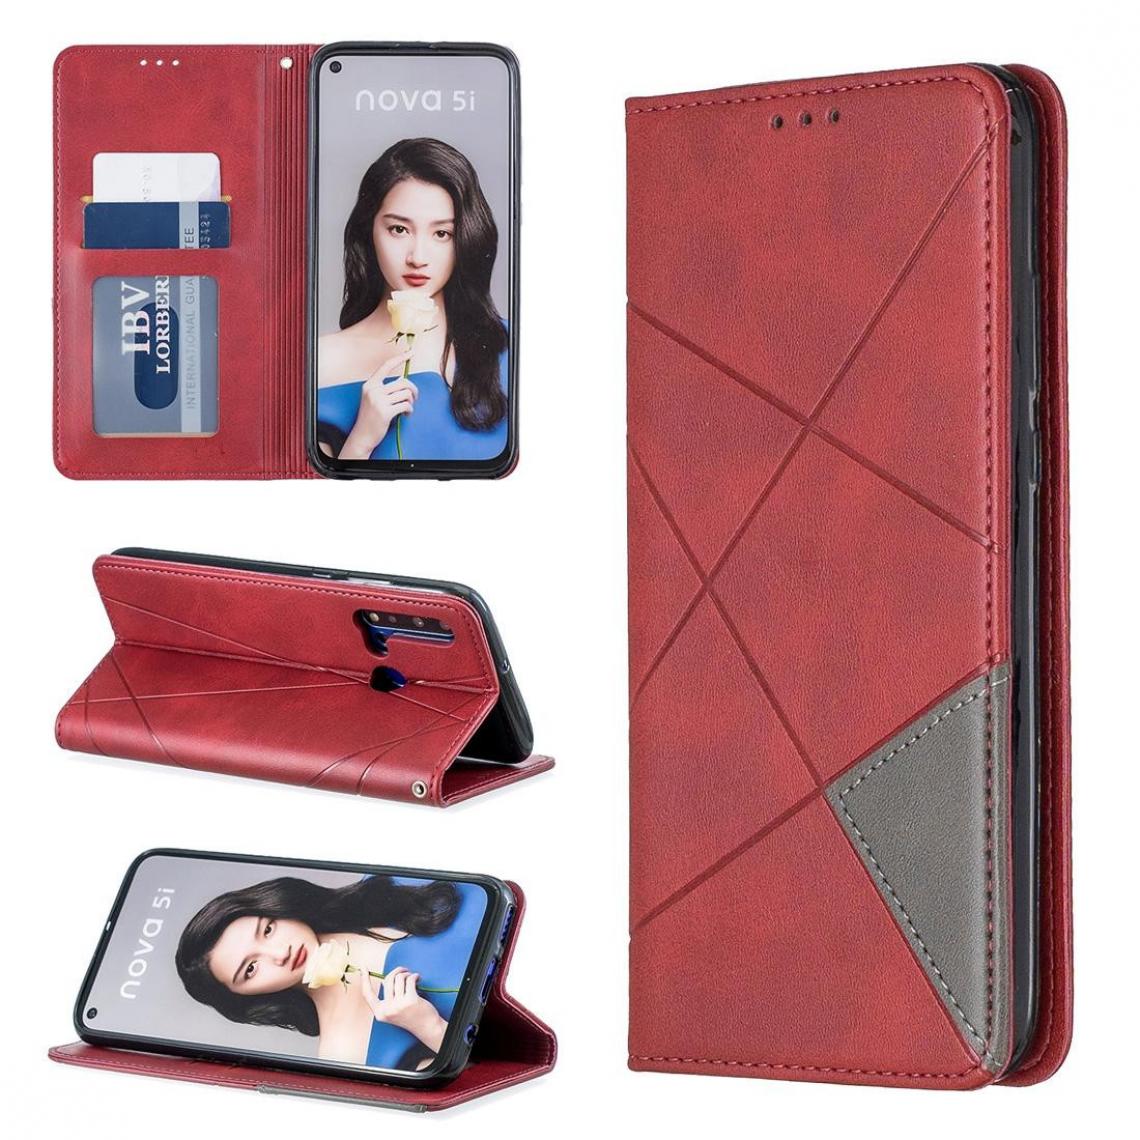 Wewoo - Housse Coque Étui en cuir magnétique à rabat horizontal à texture losange avec fentes pour cartes et supports Huawei P20 lite 2019 / nova 5i rouge - Coque, étui smartphone